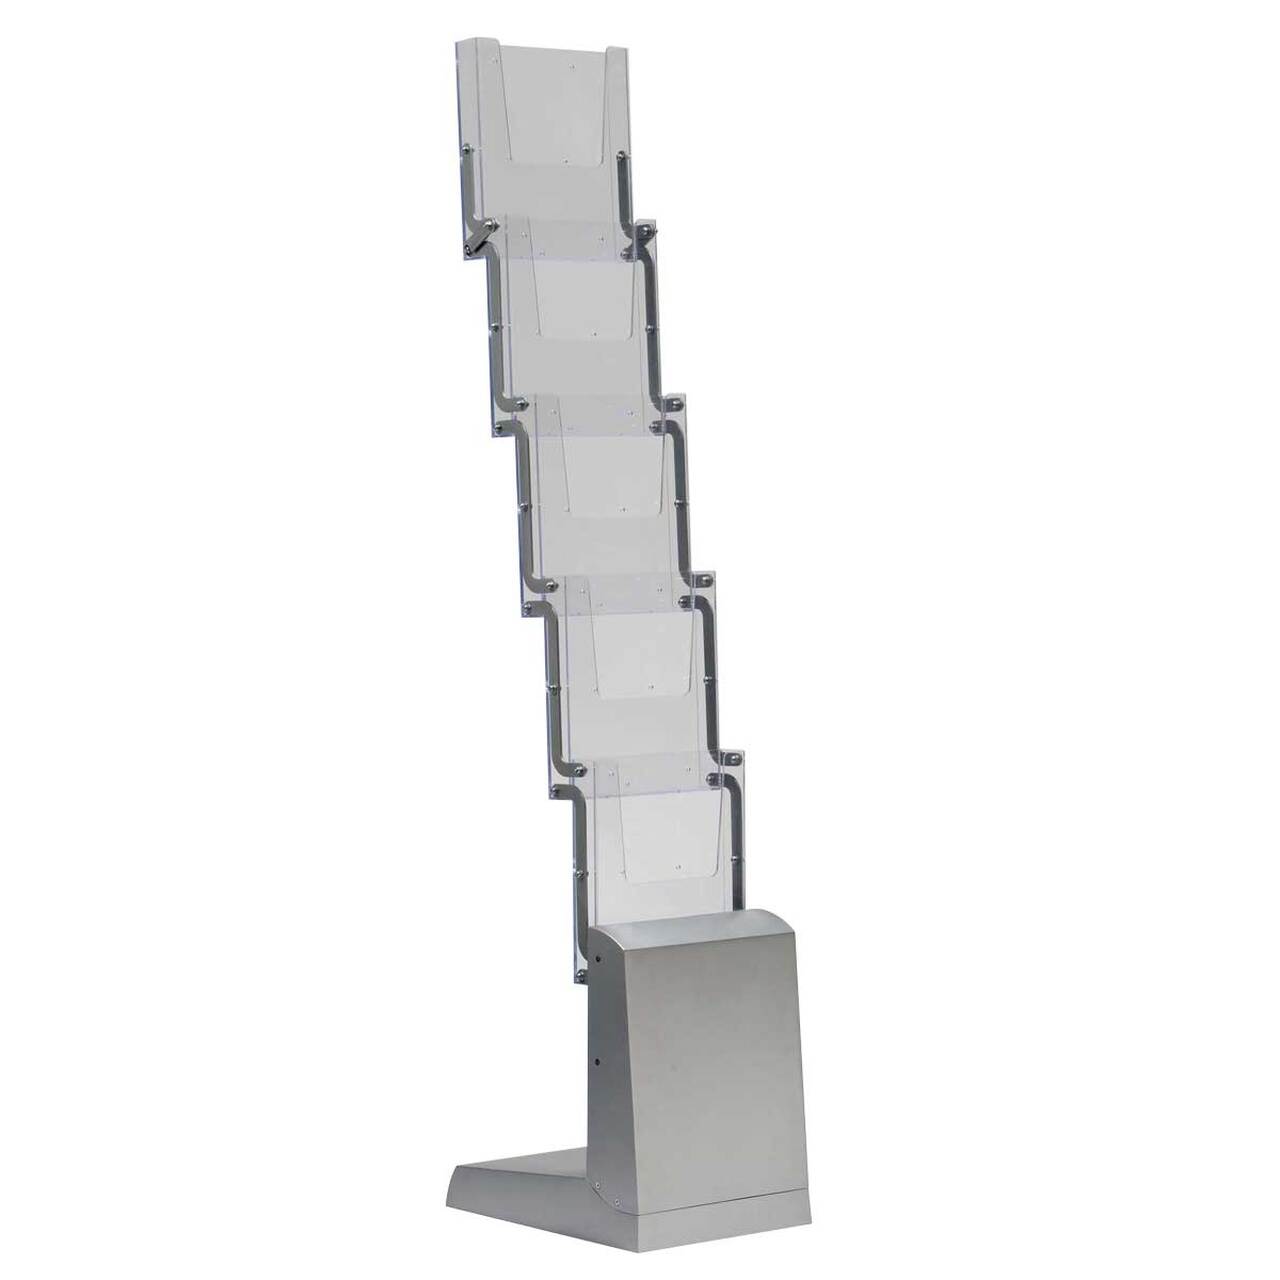 Stand/Suport zig zag pliabil pentru expunere brosuri, pliante, reviste, cu 5 buzunare format A4 (210x297mm)